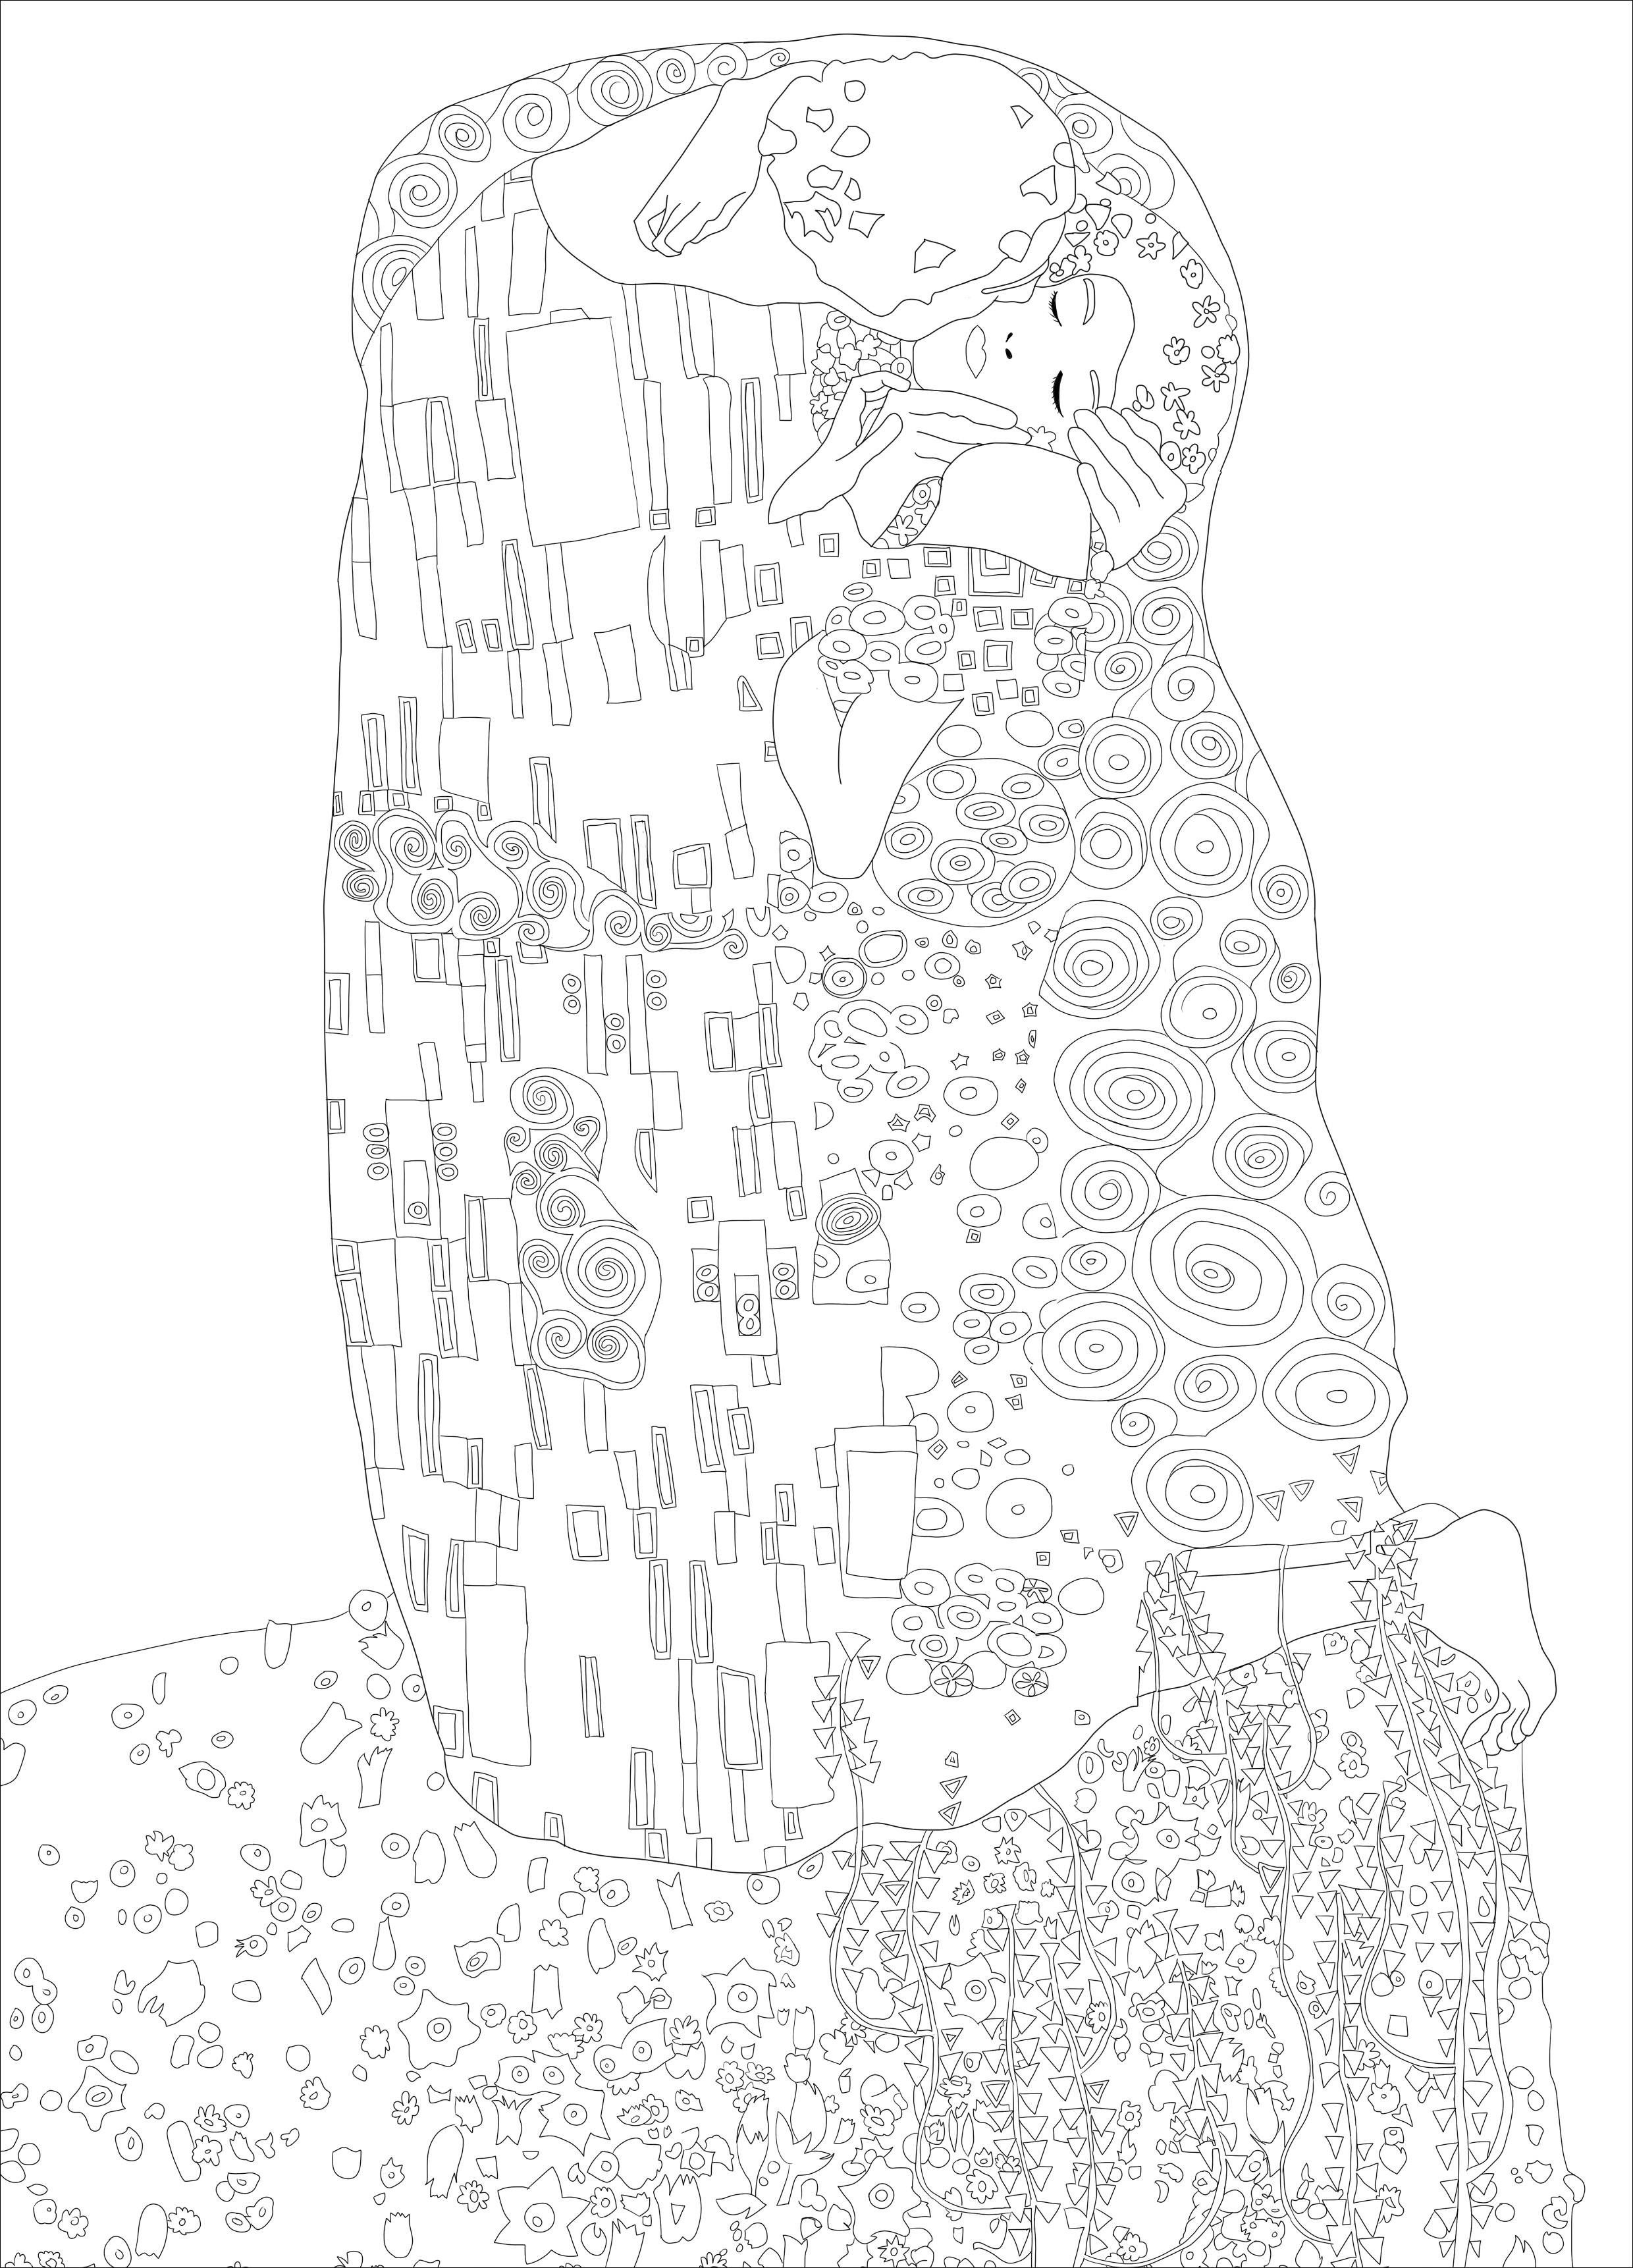 Página para colorear creada a partir del cuadro 'El beso' de Gustav Klimt. El cuadro está considerado una obra maestra del movimiento Art Nouveau y es una de las obras más populares de Klimt. Actualmente se encuentra en el museo Österreichische Galerie Belvedere de Viena (Austria). El cuadro es conocido por su naturaleza sensual y erótica, y por el uso de pan de oro y otros elementos decorativos en la composición, Artista : Ji. M